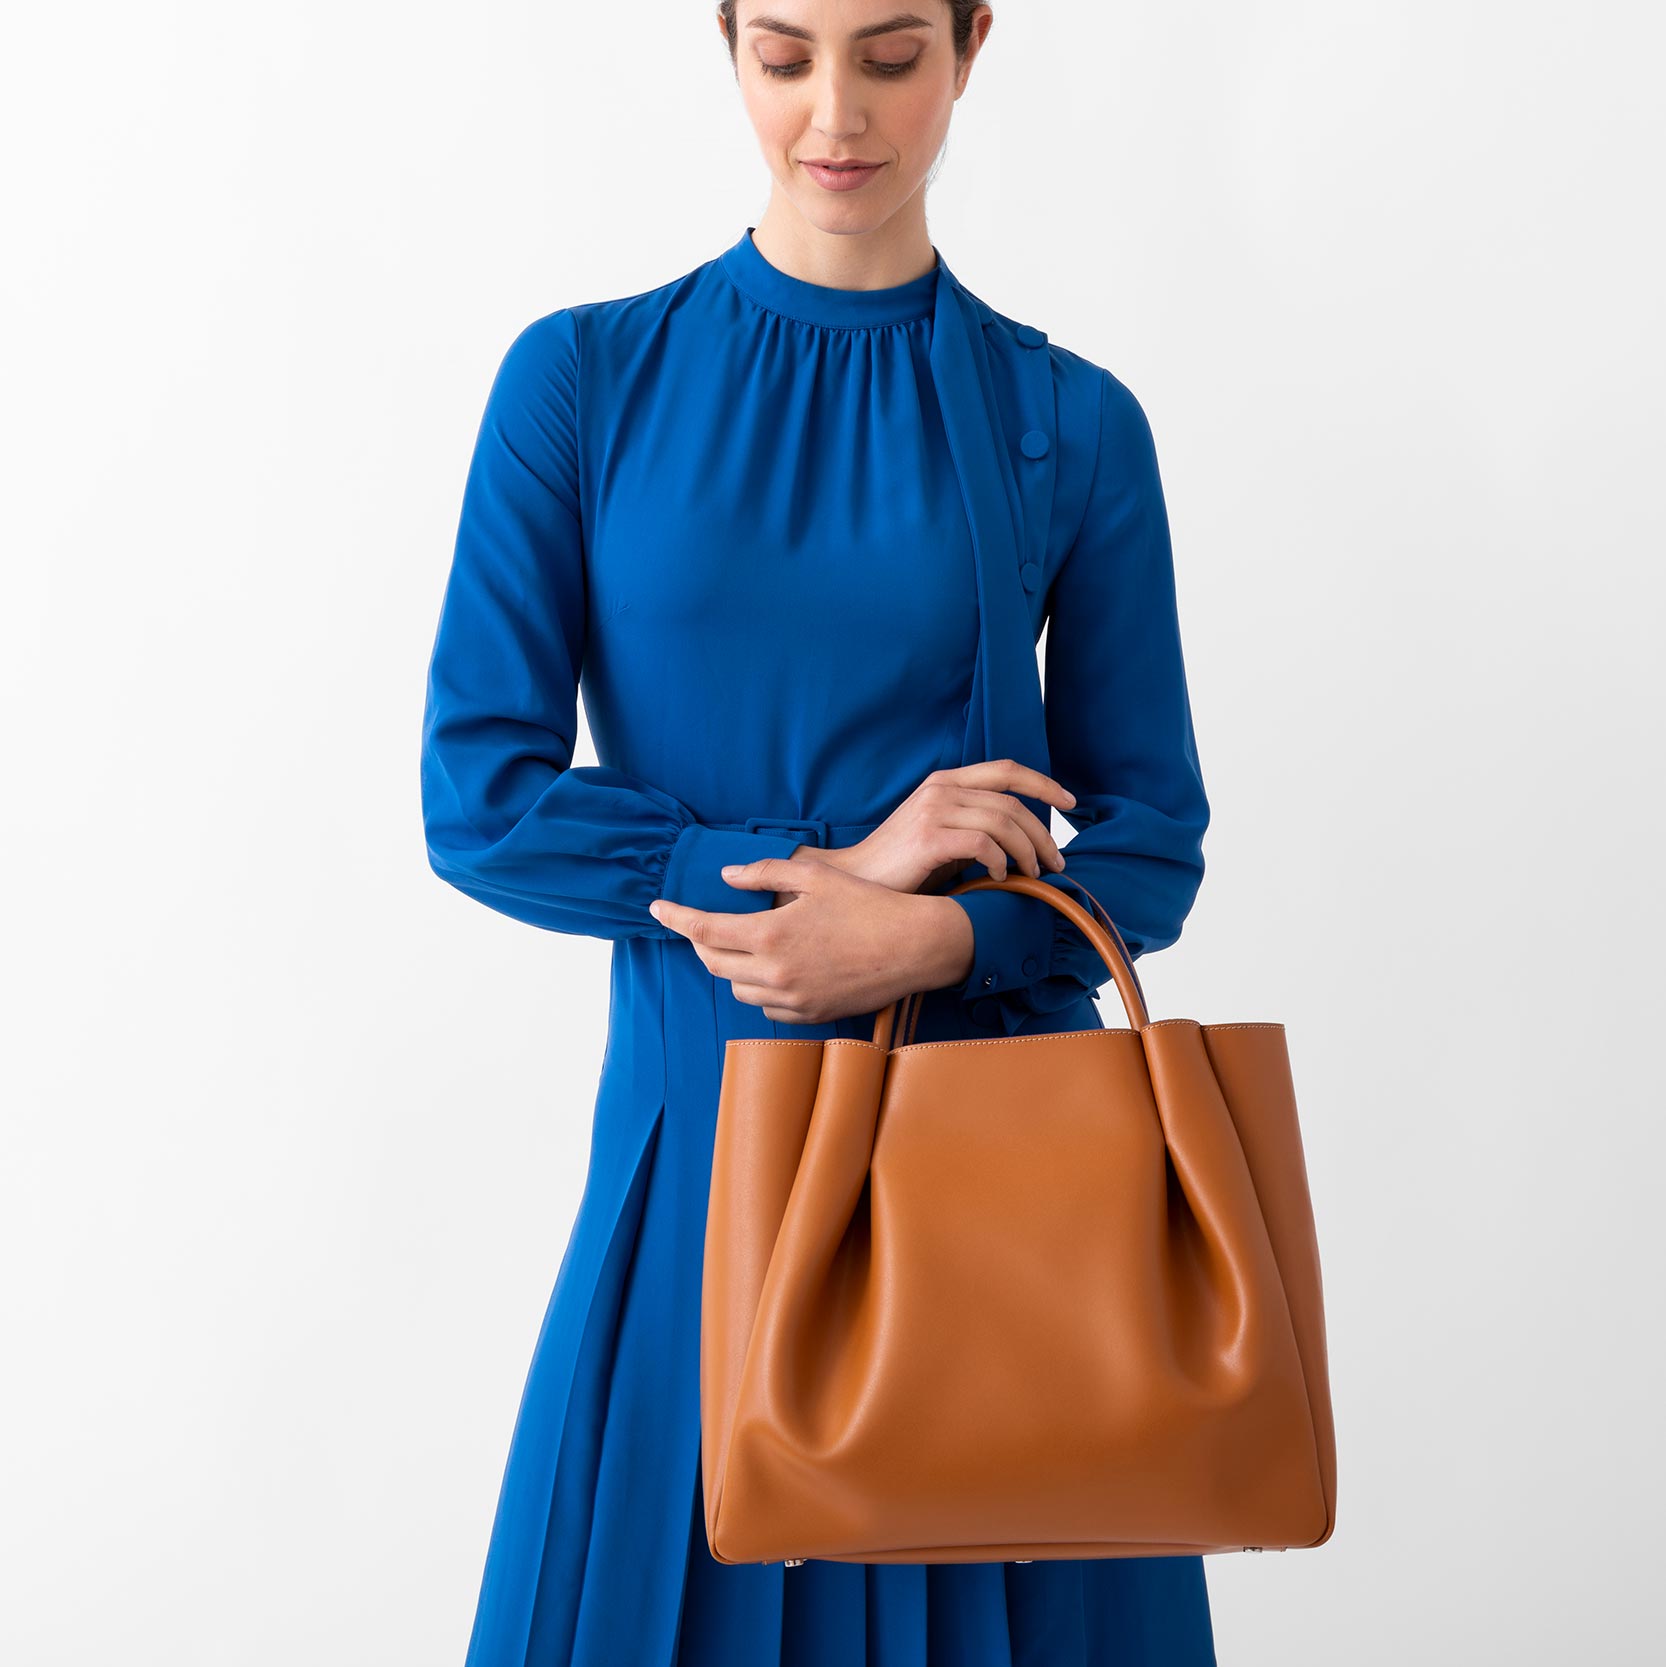 Blue Croc Print Shopper Bag / Blue Leather Bag / Blue -  Sweden